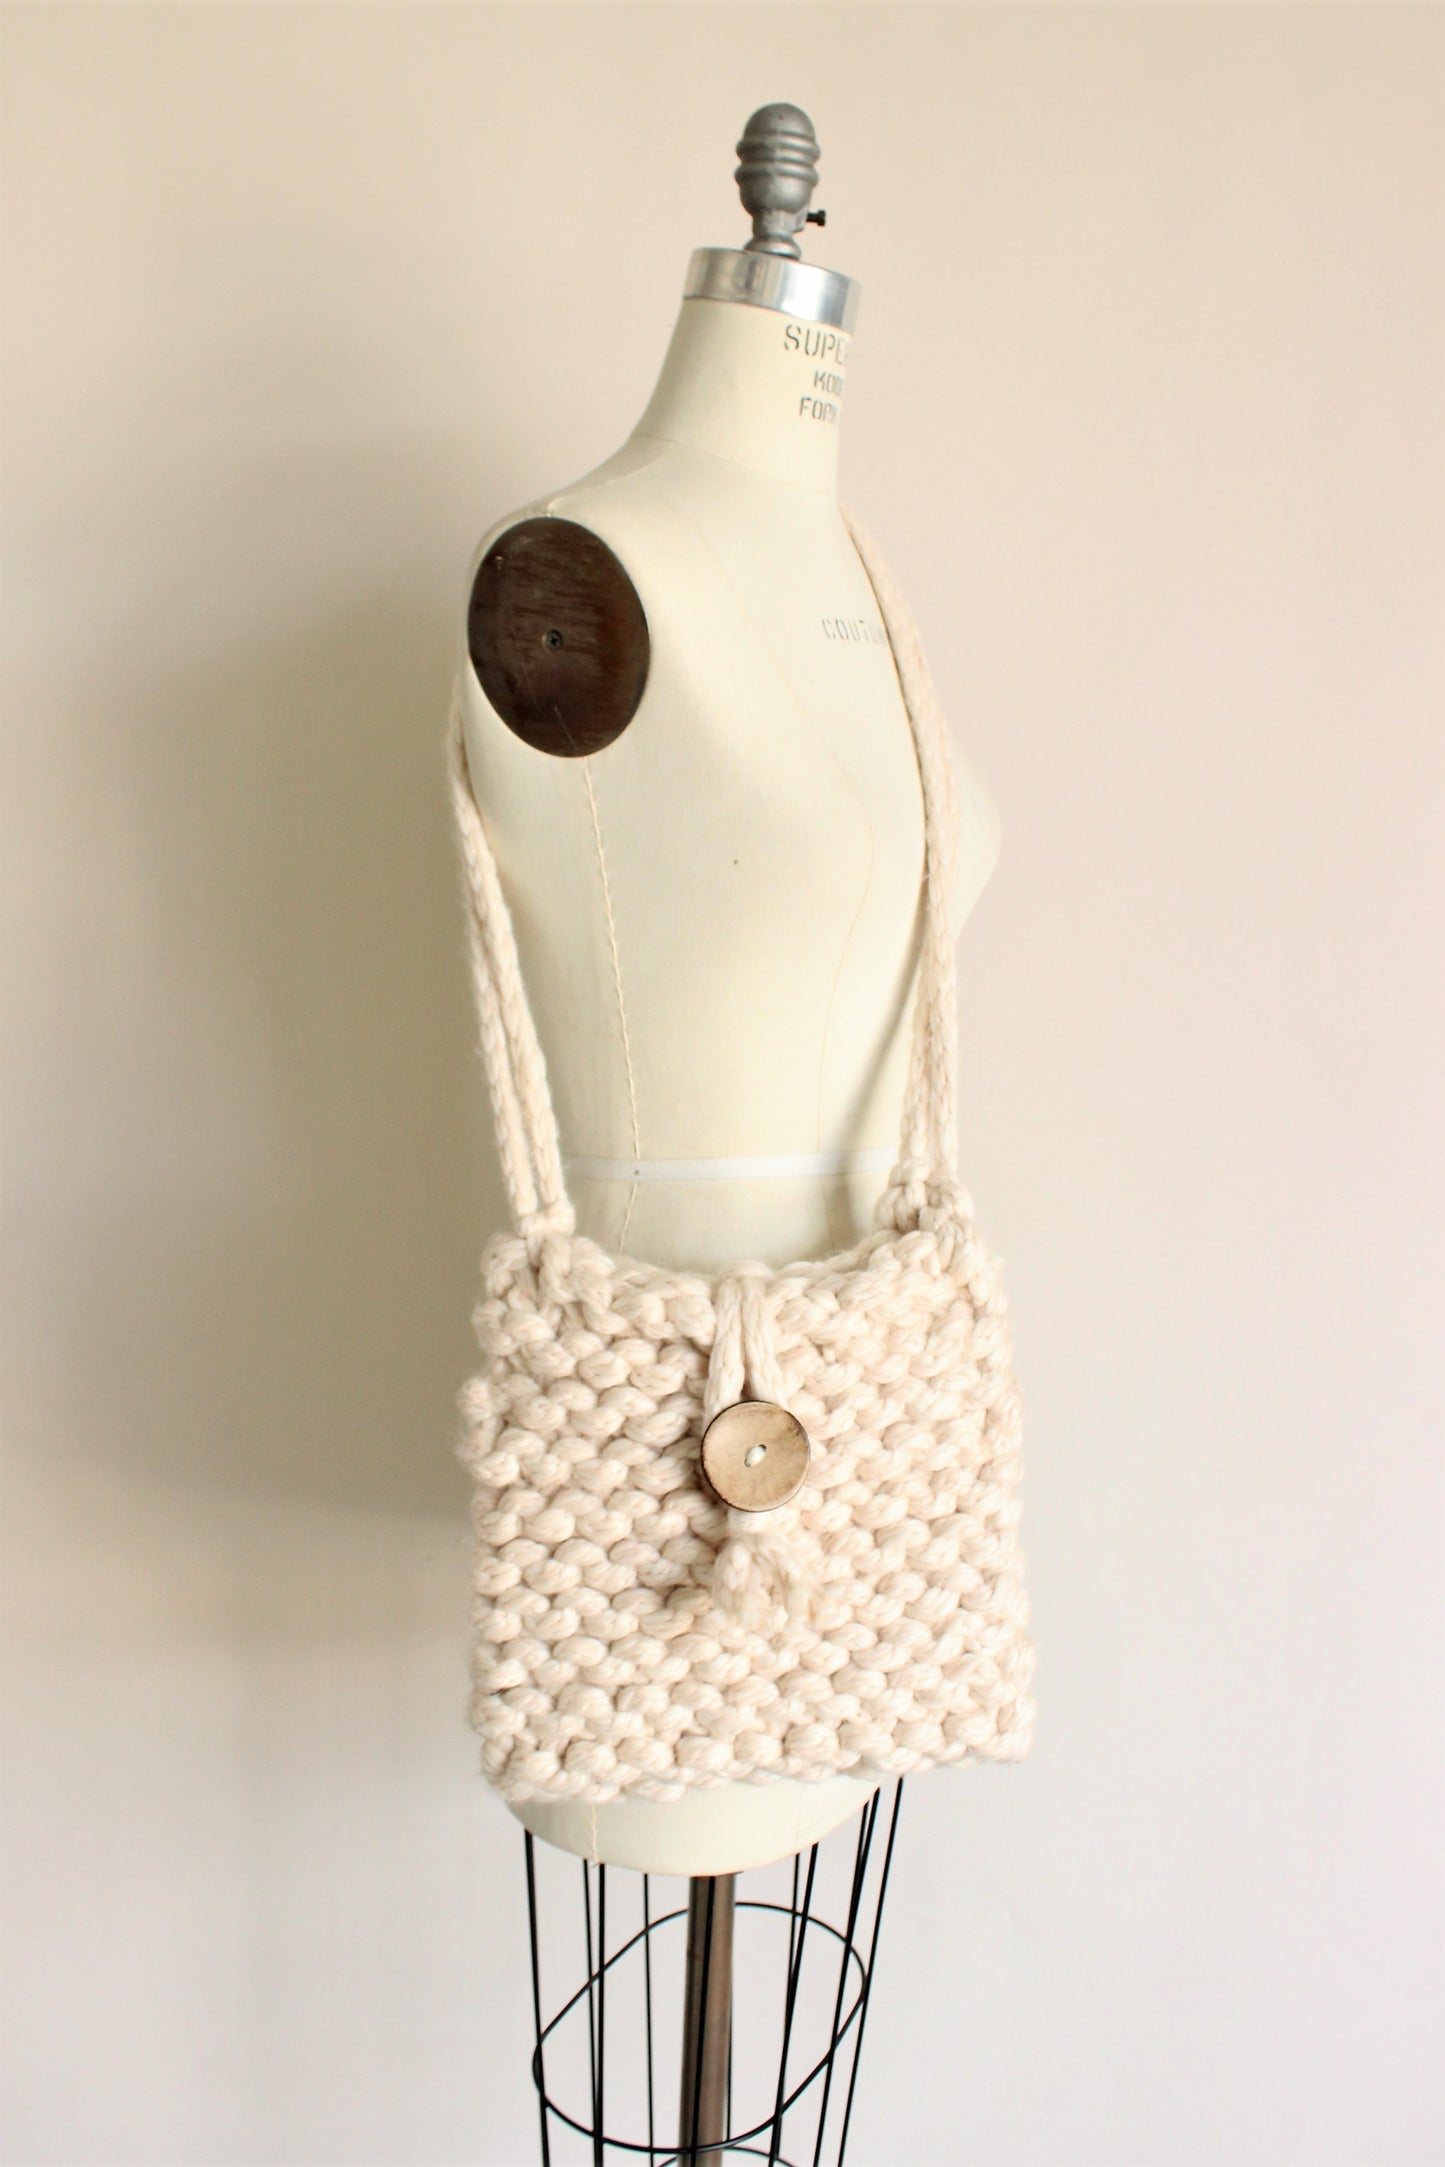 The Cottonwood Handknit Shoulder Bag in Ivory